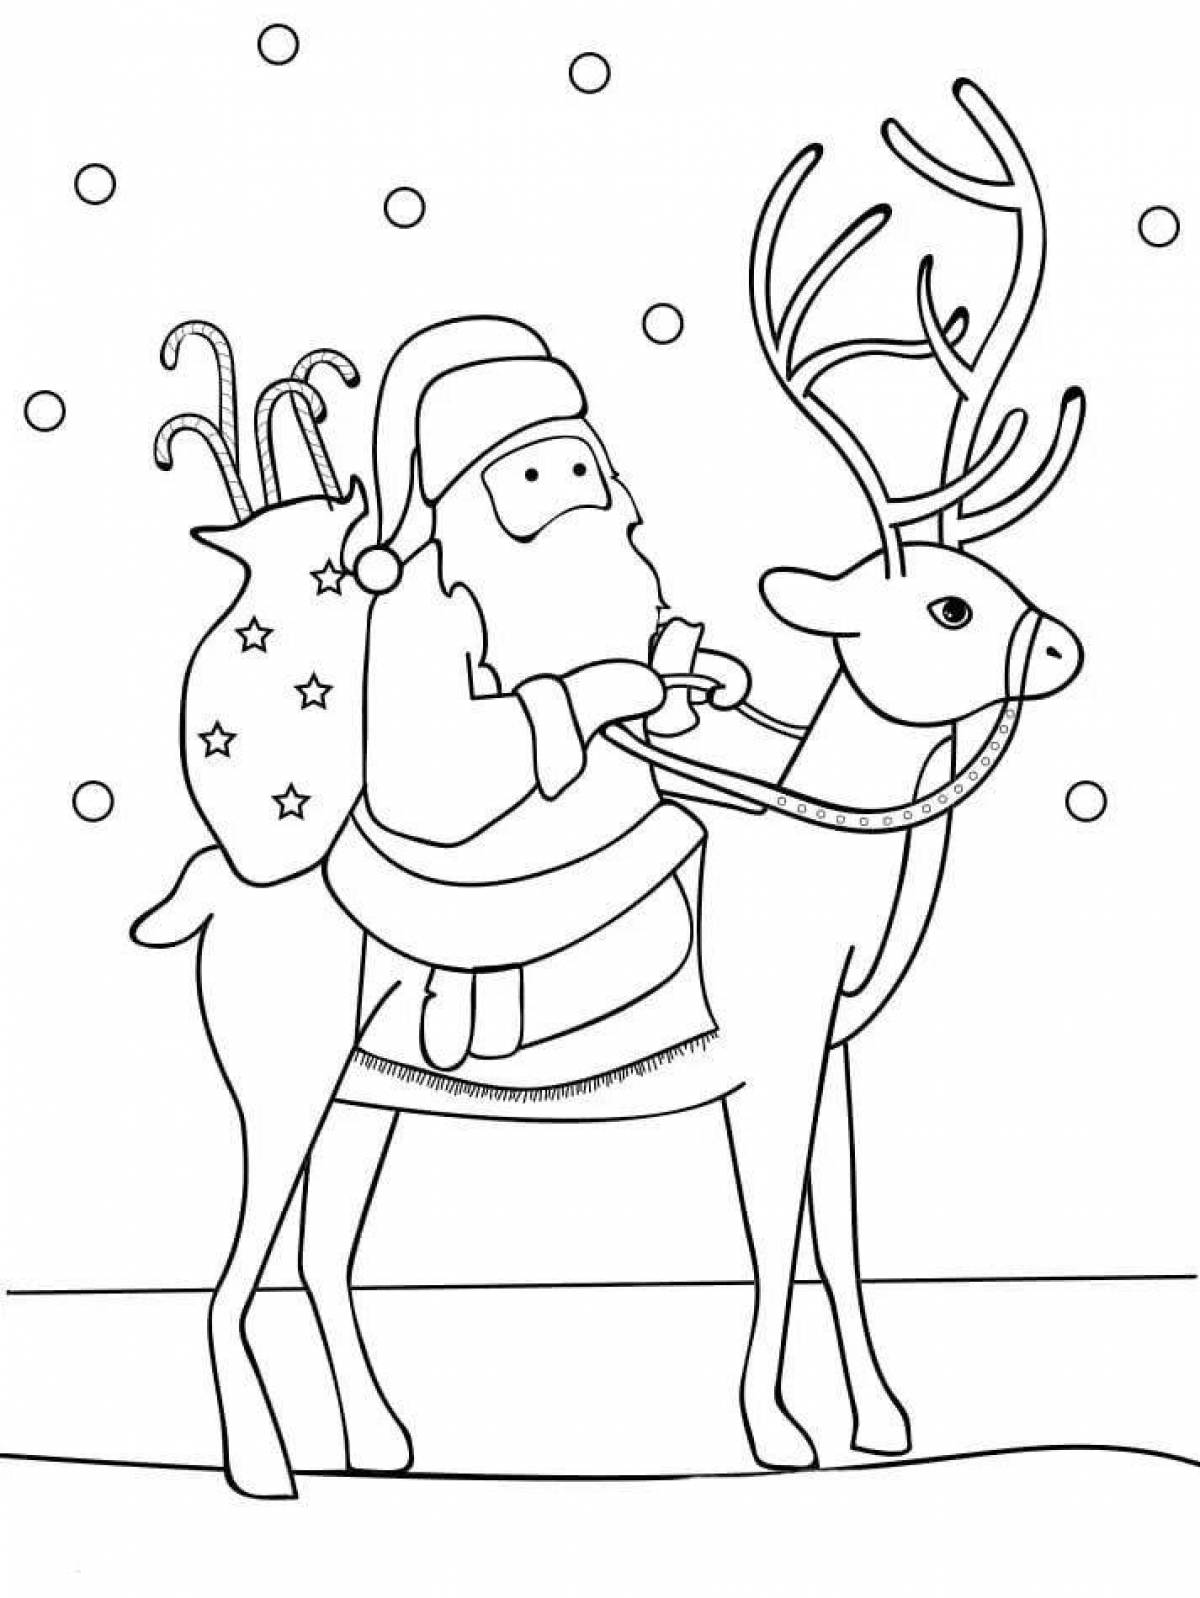 Playful santa claus and reindeer coloring book